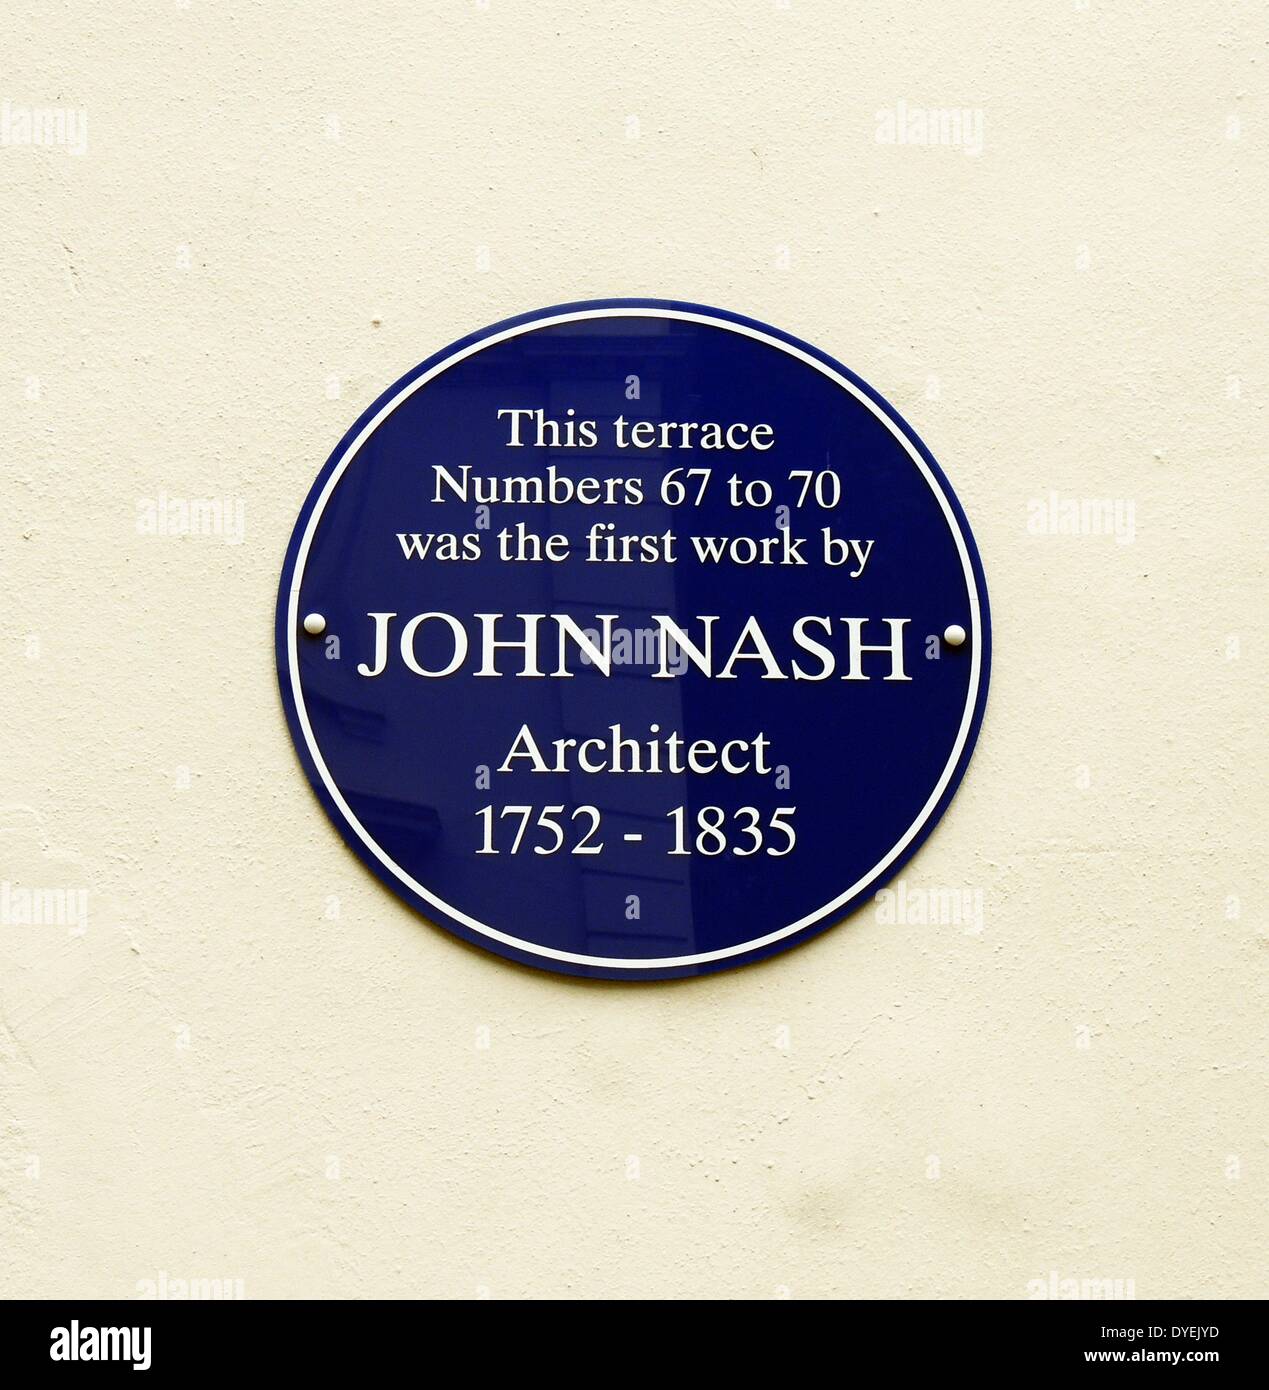 66-71 Great Russell Street London 2013. En primer lugar conocido labor independiente del arquitecto Sir John Nash 1778. Una placa azul puede verse conmemorando la labor de Nash. Foto de stock